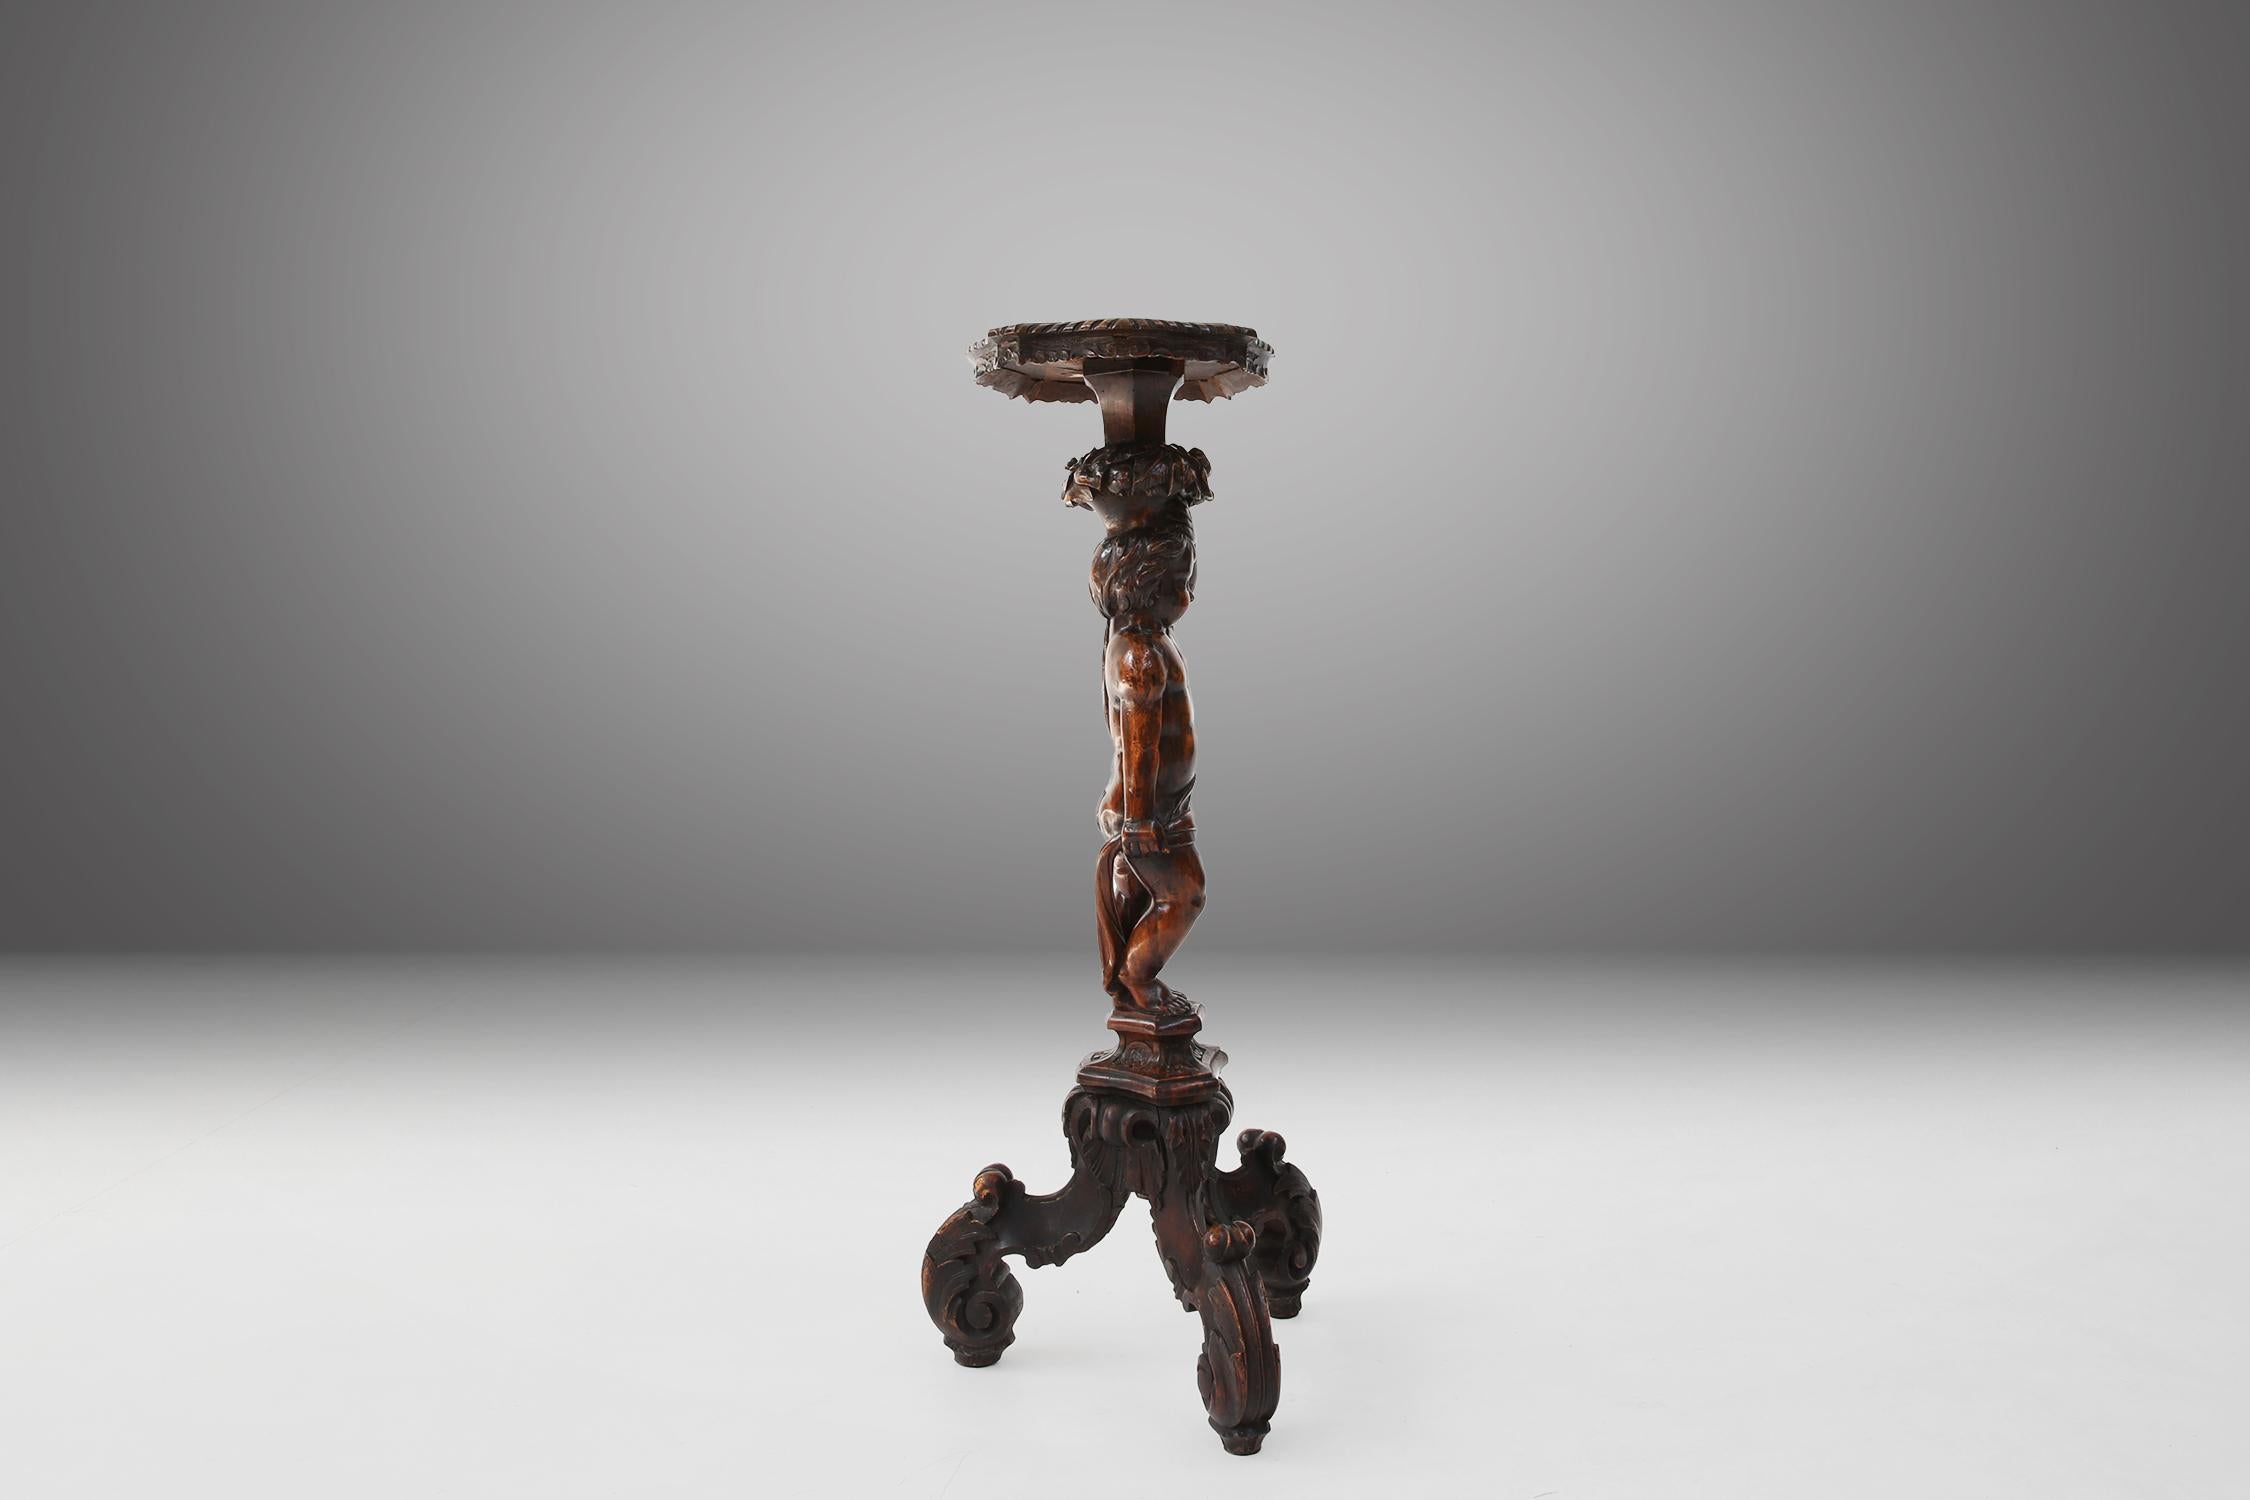 Dieser Tisch ist aus Massivholz gefertigt, was bedeutet, dass er eine robuste und langlebige Konstruktion hat. Das Holz hat eine schöne Patina, die ein Zeichen für das Alter und die Qualität des MATERIALs ist. Der Tisch stammt aus der Zeit um 1850,